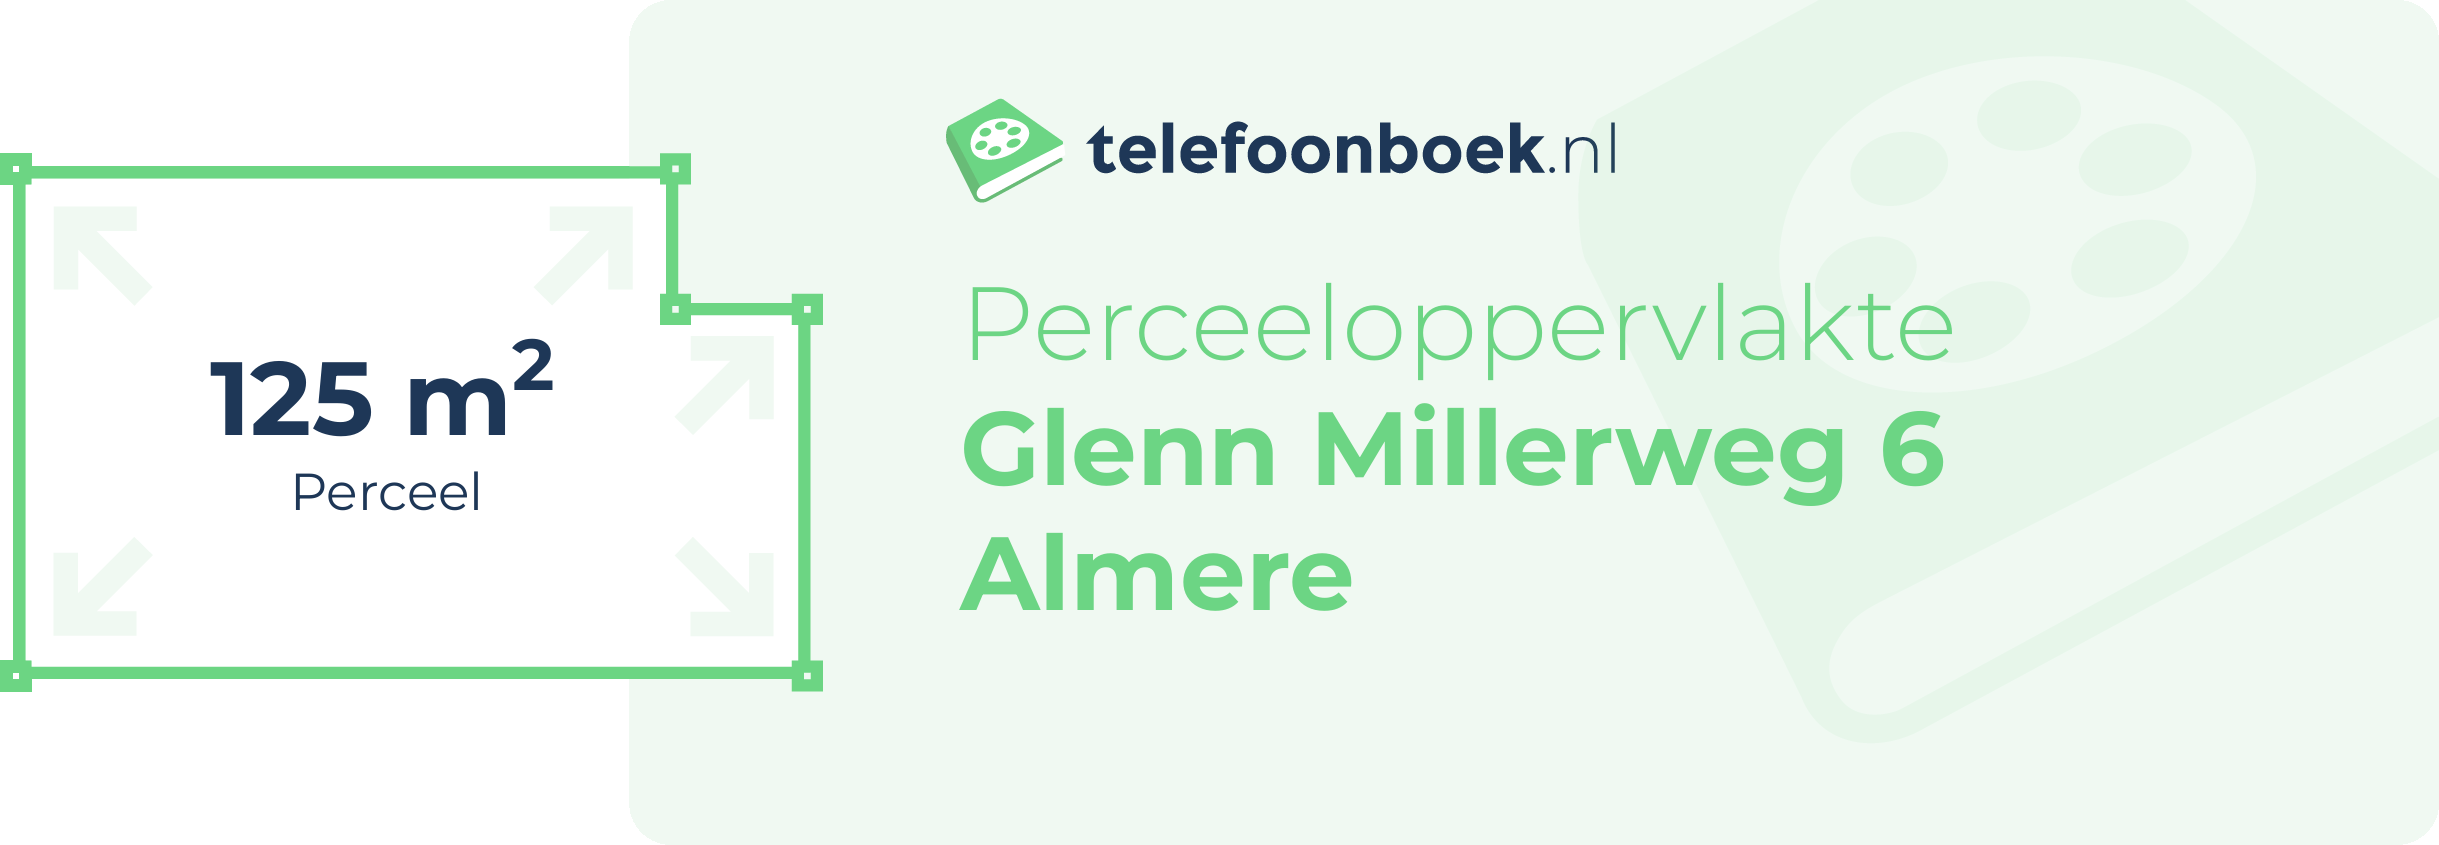 Perceeloppervlakte Glenn Millerweg 6 Almere